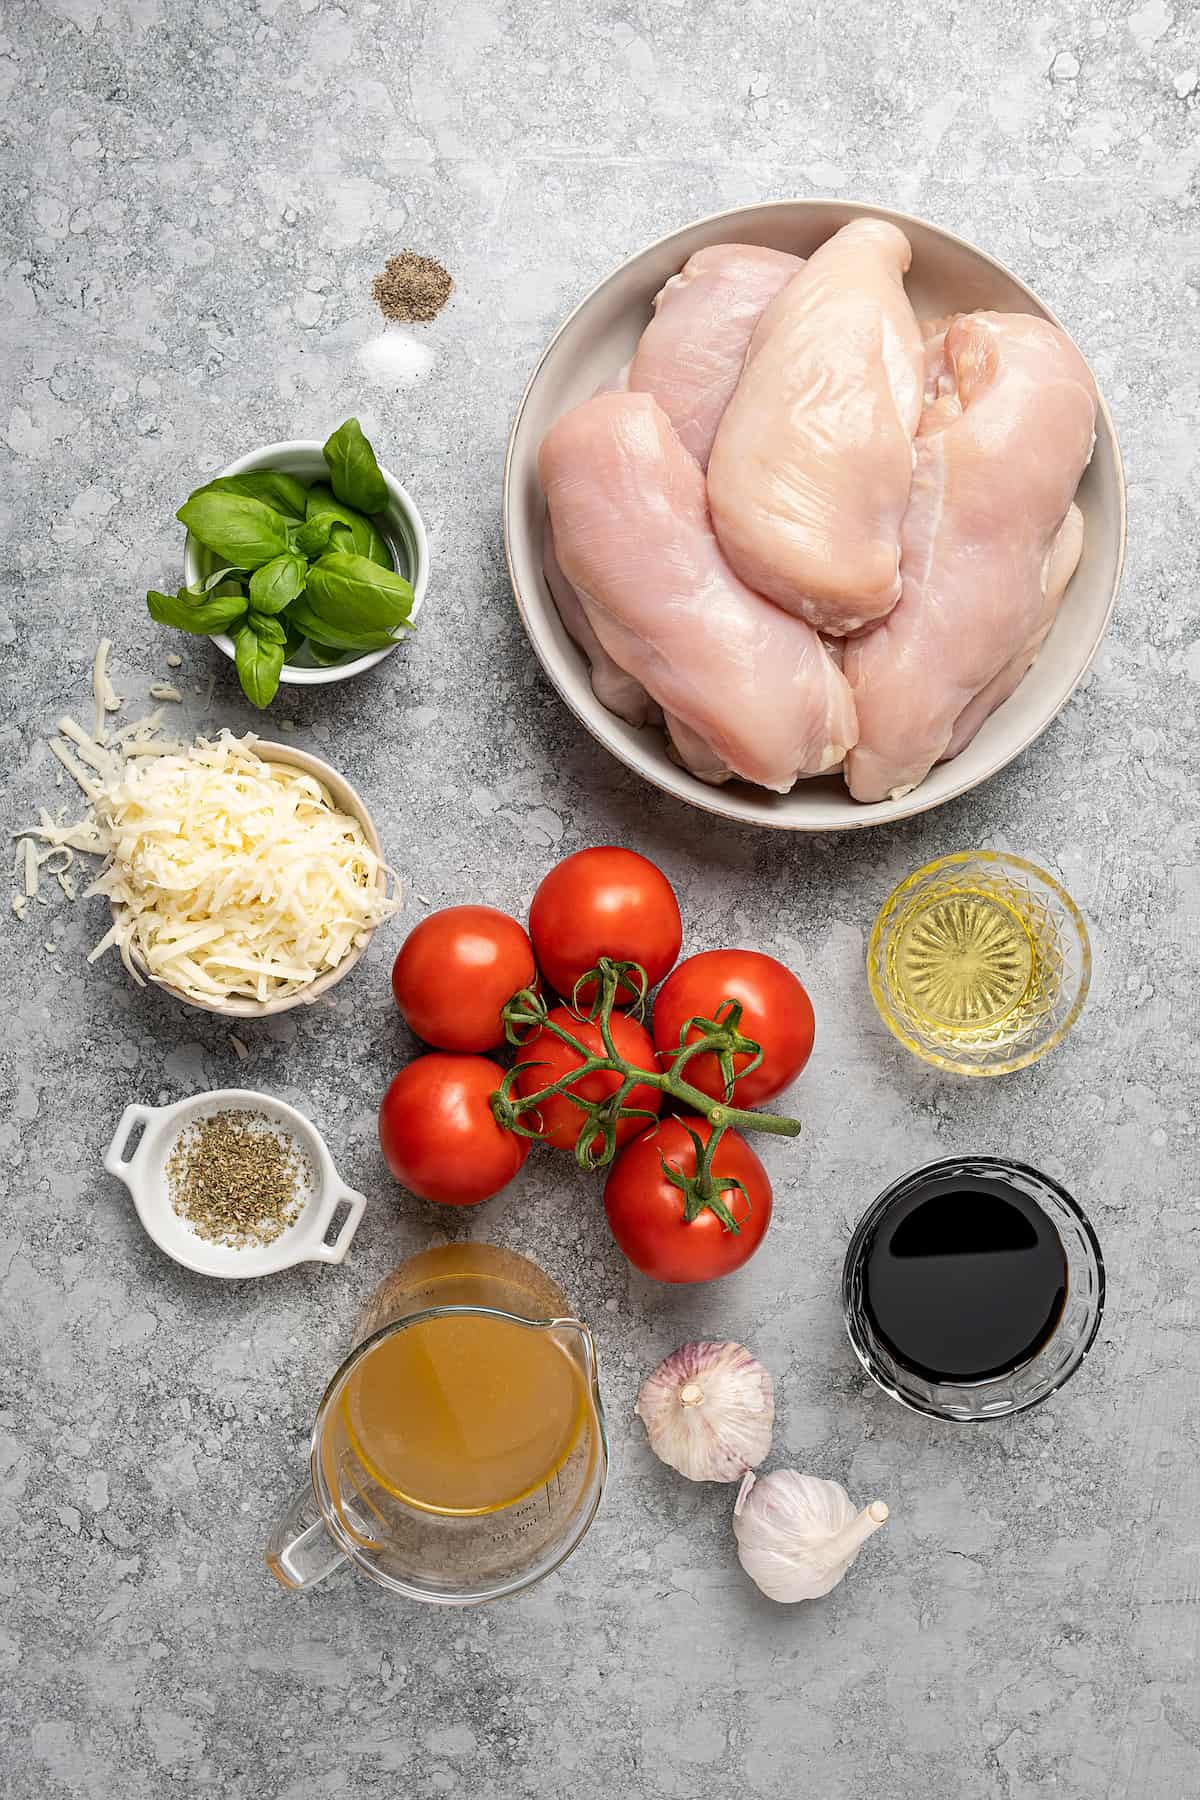 The ingredients for bruschetta stuffed chicken breasts.